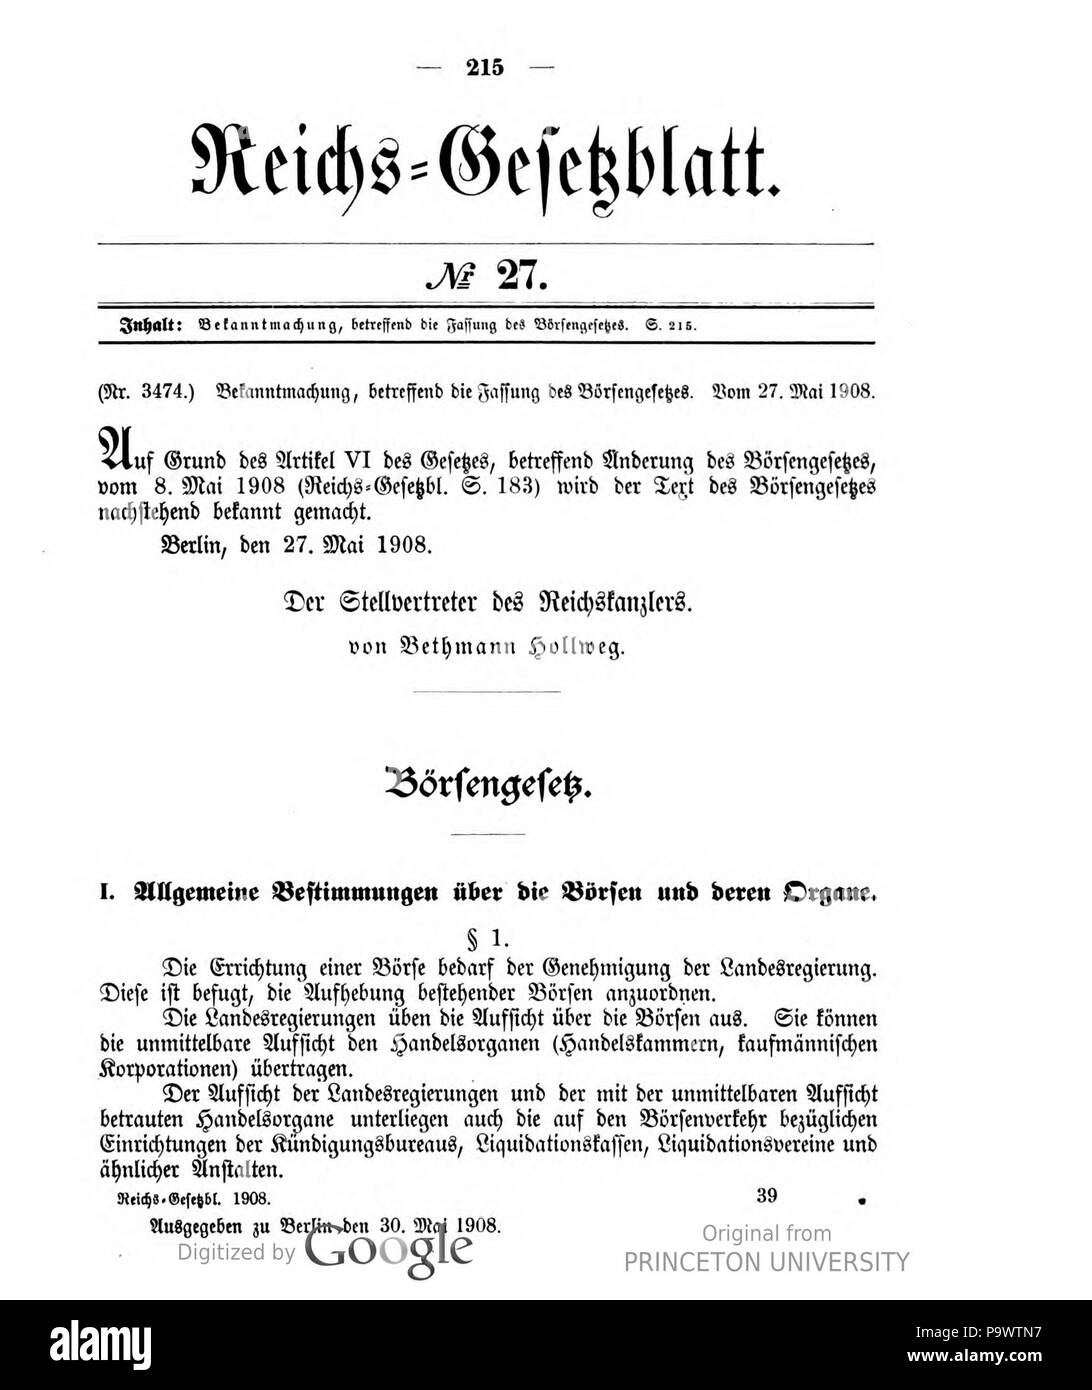 427 Deutsches Reichsgesetzblatt 1908 027 215 Stock Photo